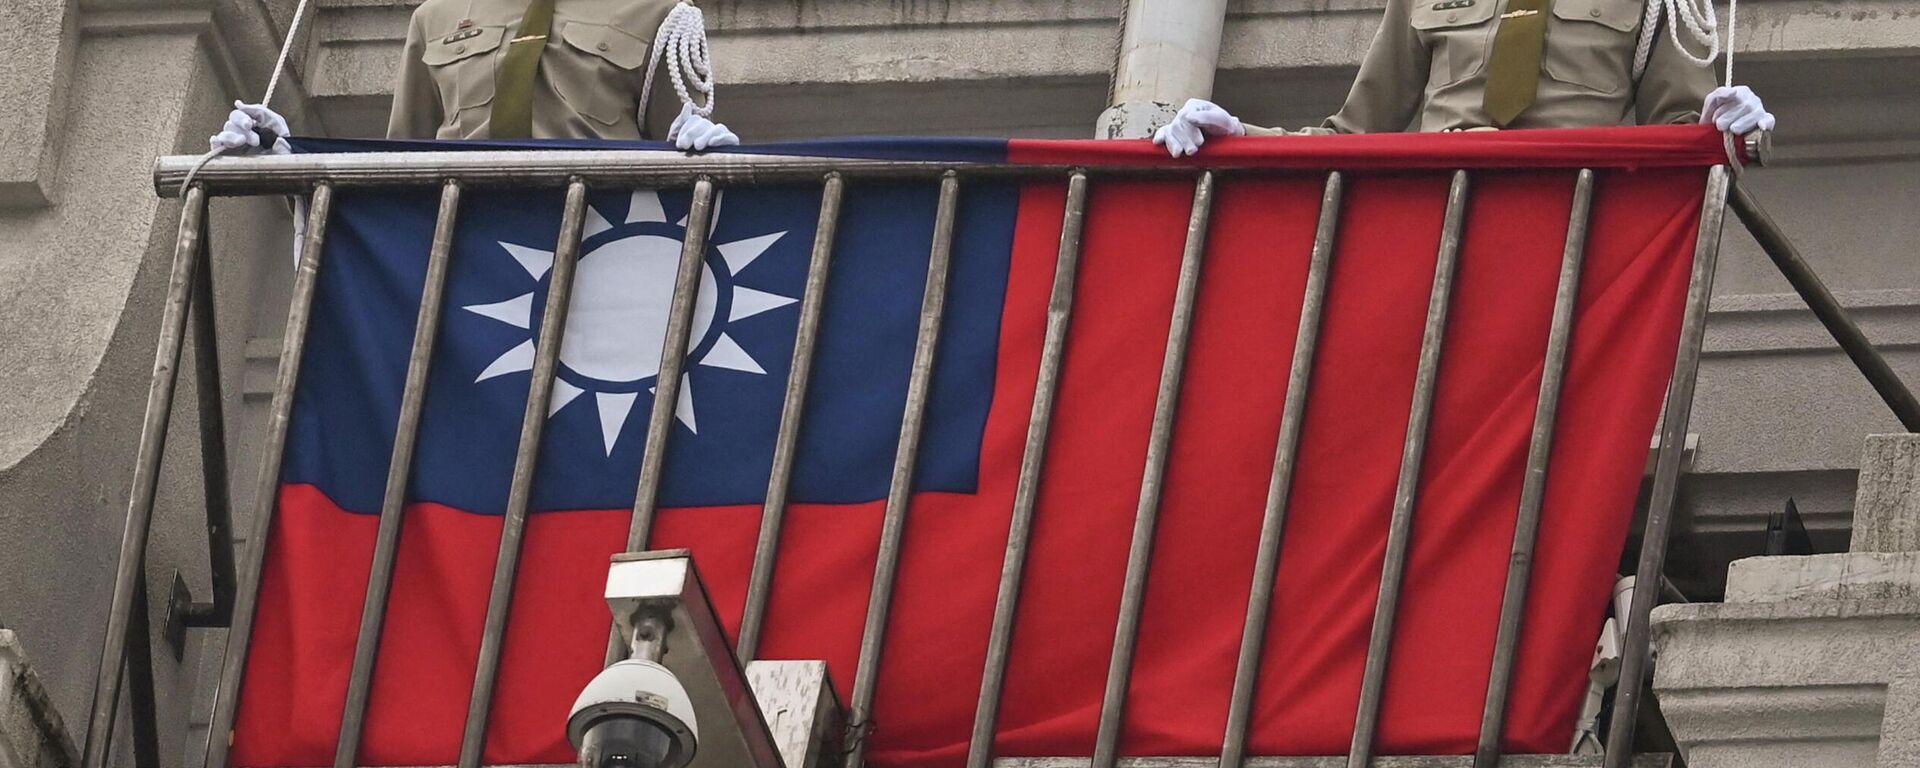 Policías militares resguardan una bandera de Taiwán.  - Sputnik Mundo, 1920, 27.03.2023